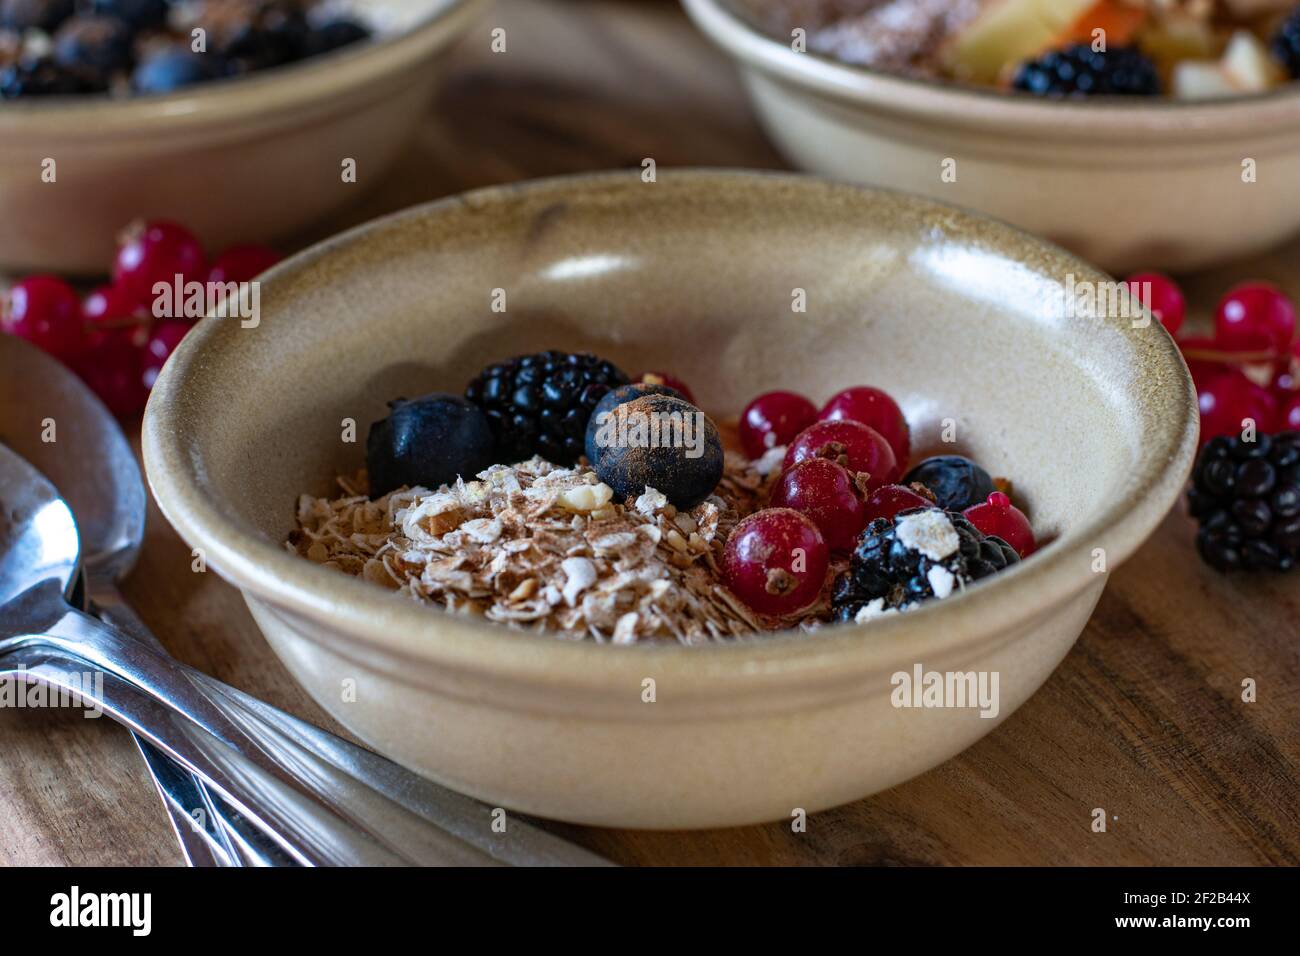 Una ciotola con farinata d'avena, noci tostate e bacche servita su un tavolo rustico per la colazione Foto Stock